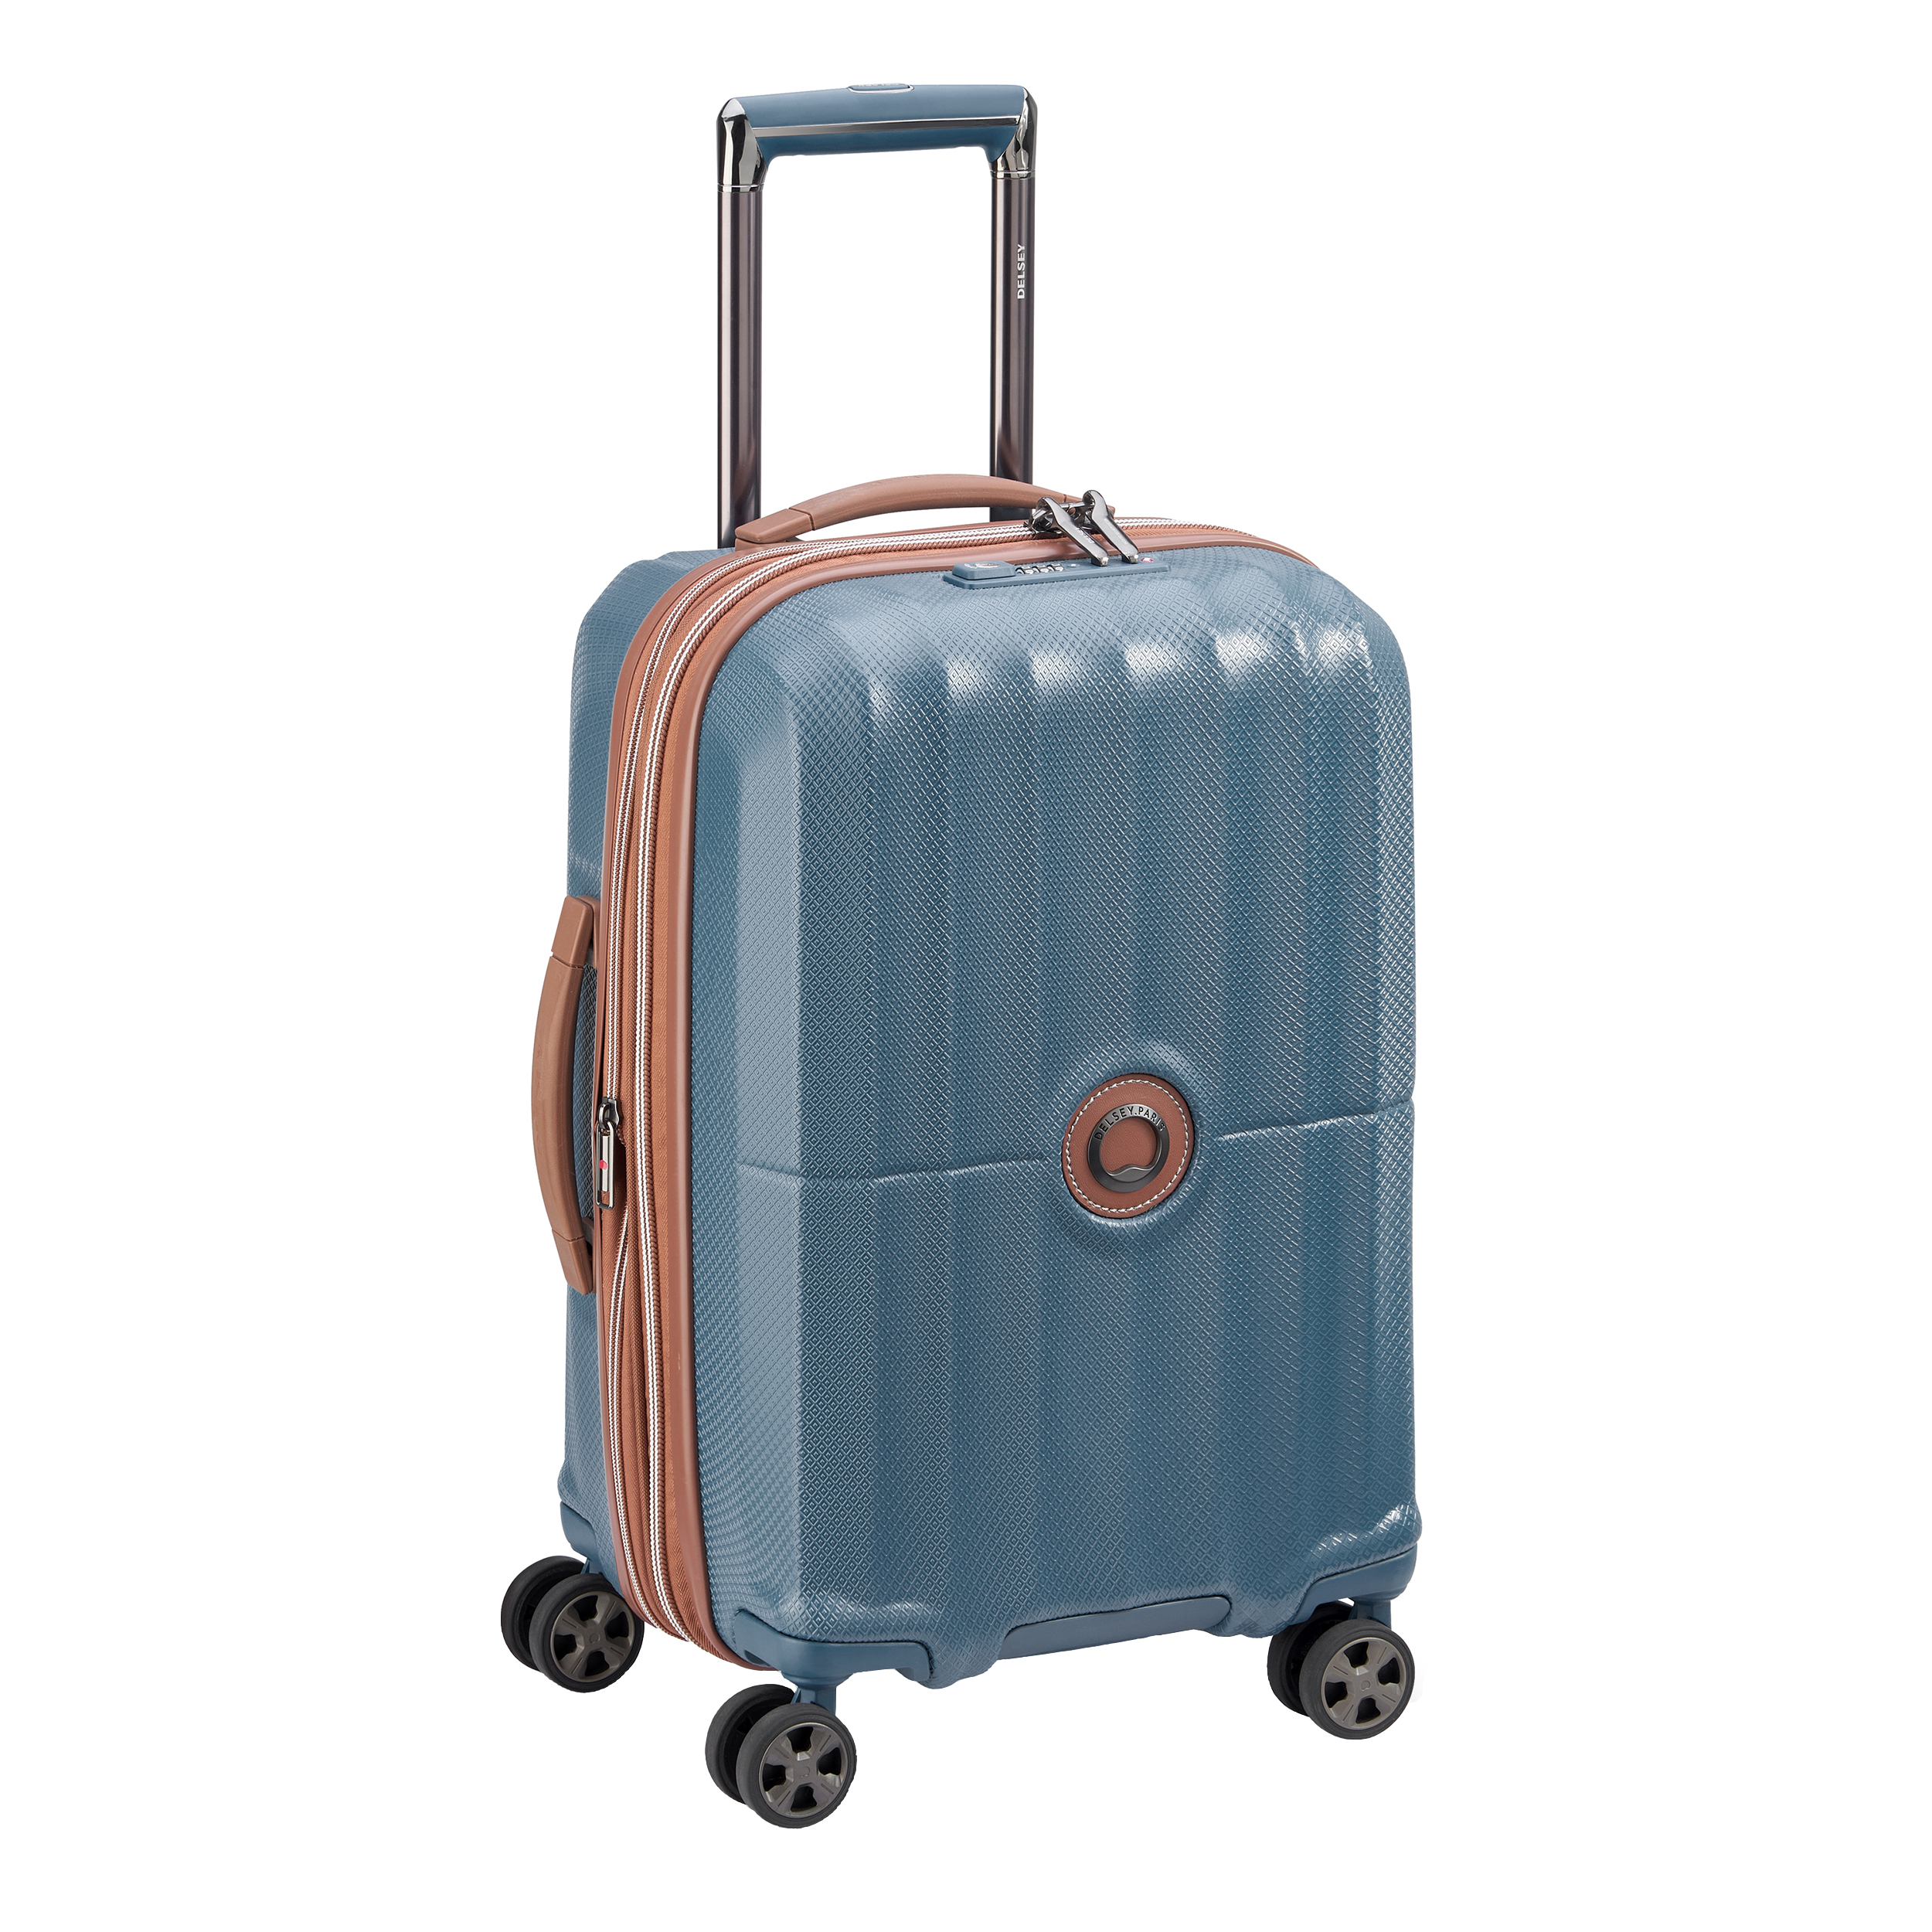 نکته خرید - قیمت روز چمدان دلسی مدل ST TROPEZ کد 2087801 سایز کوچک خرید